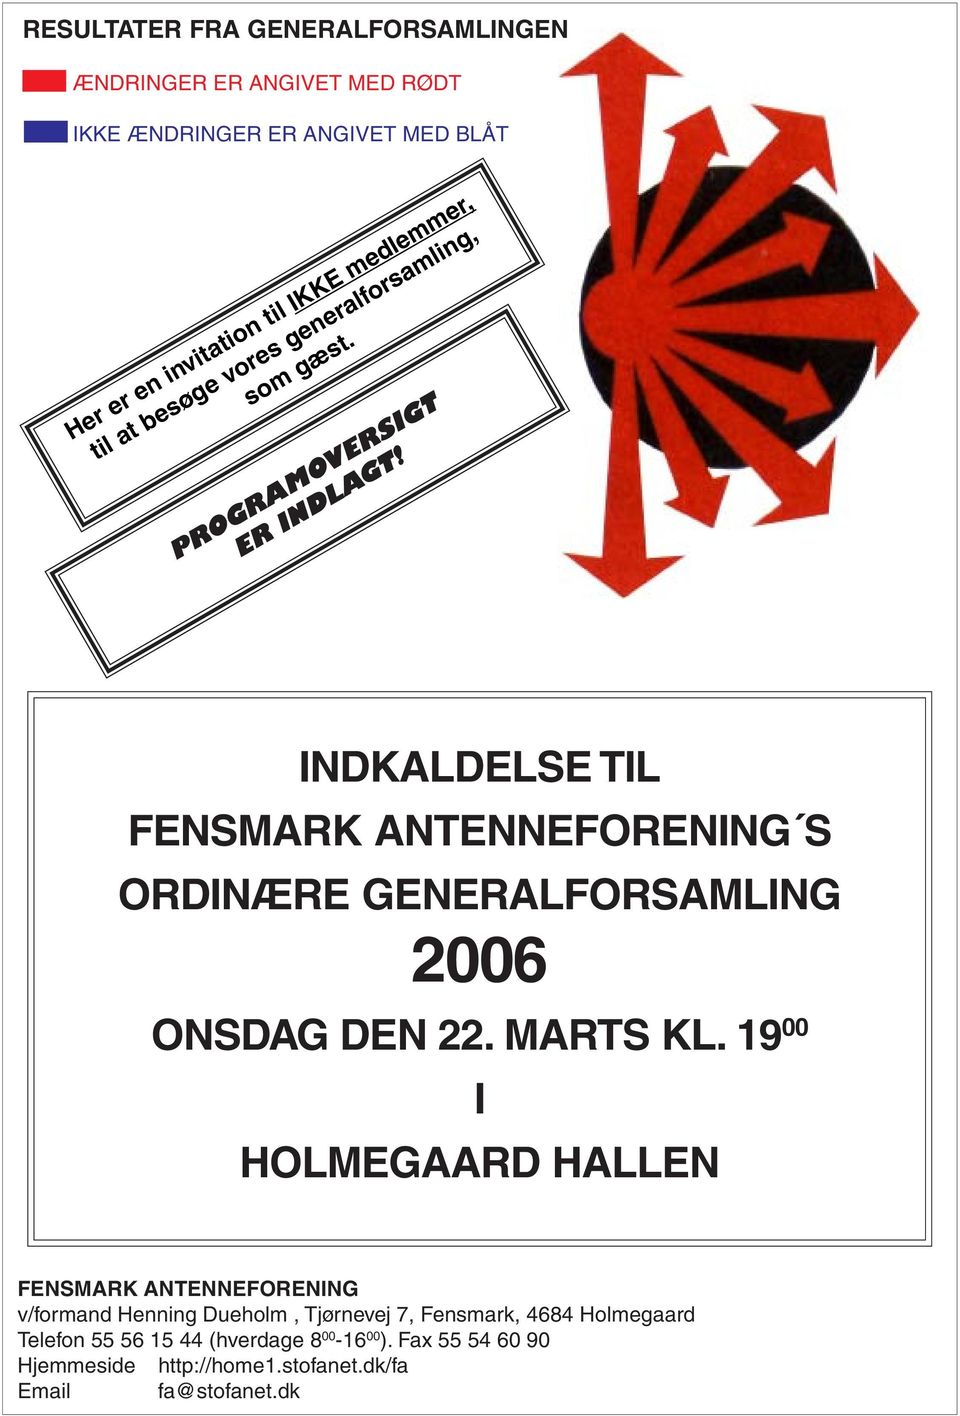 INDKALDELSE TIL FENSMARK ANTENNEFORENING S ORDINÆRE GENERALFORSAMLING 2006 ONSDAG DEN 22. MARTS KL.